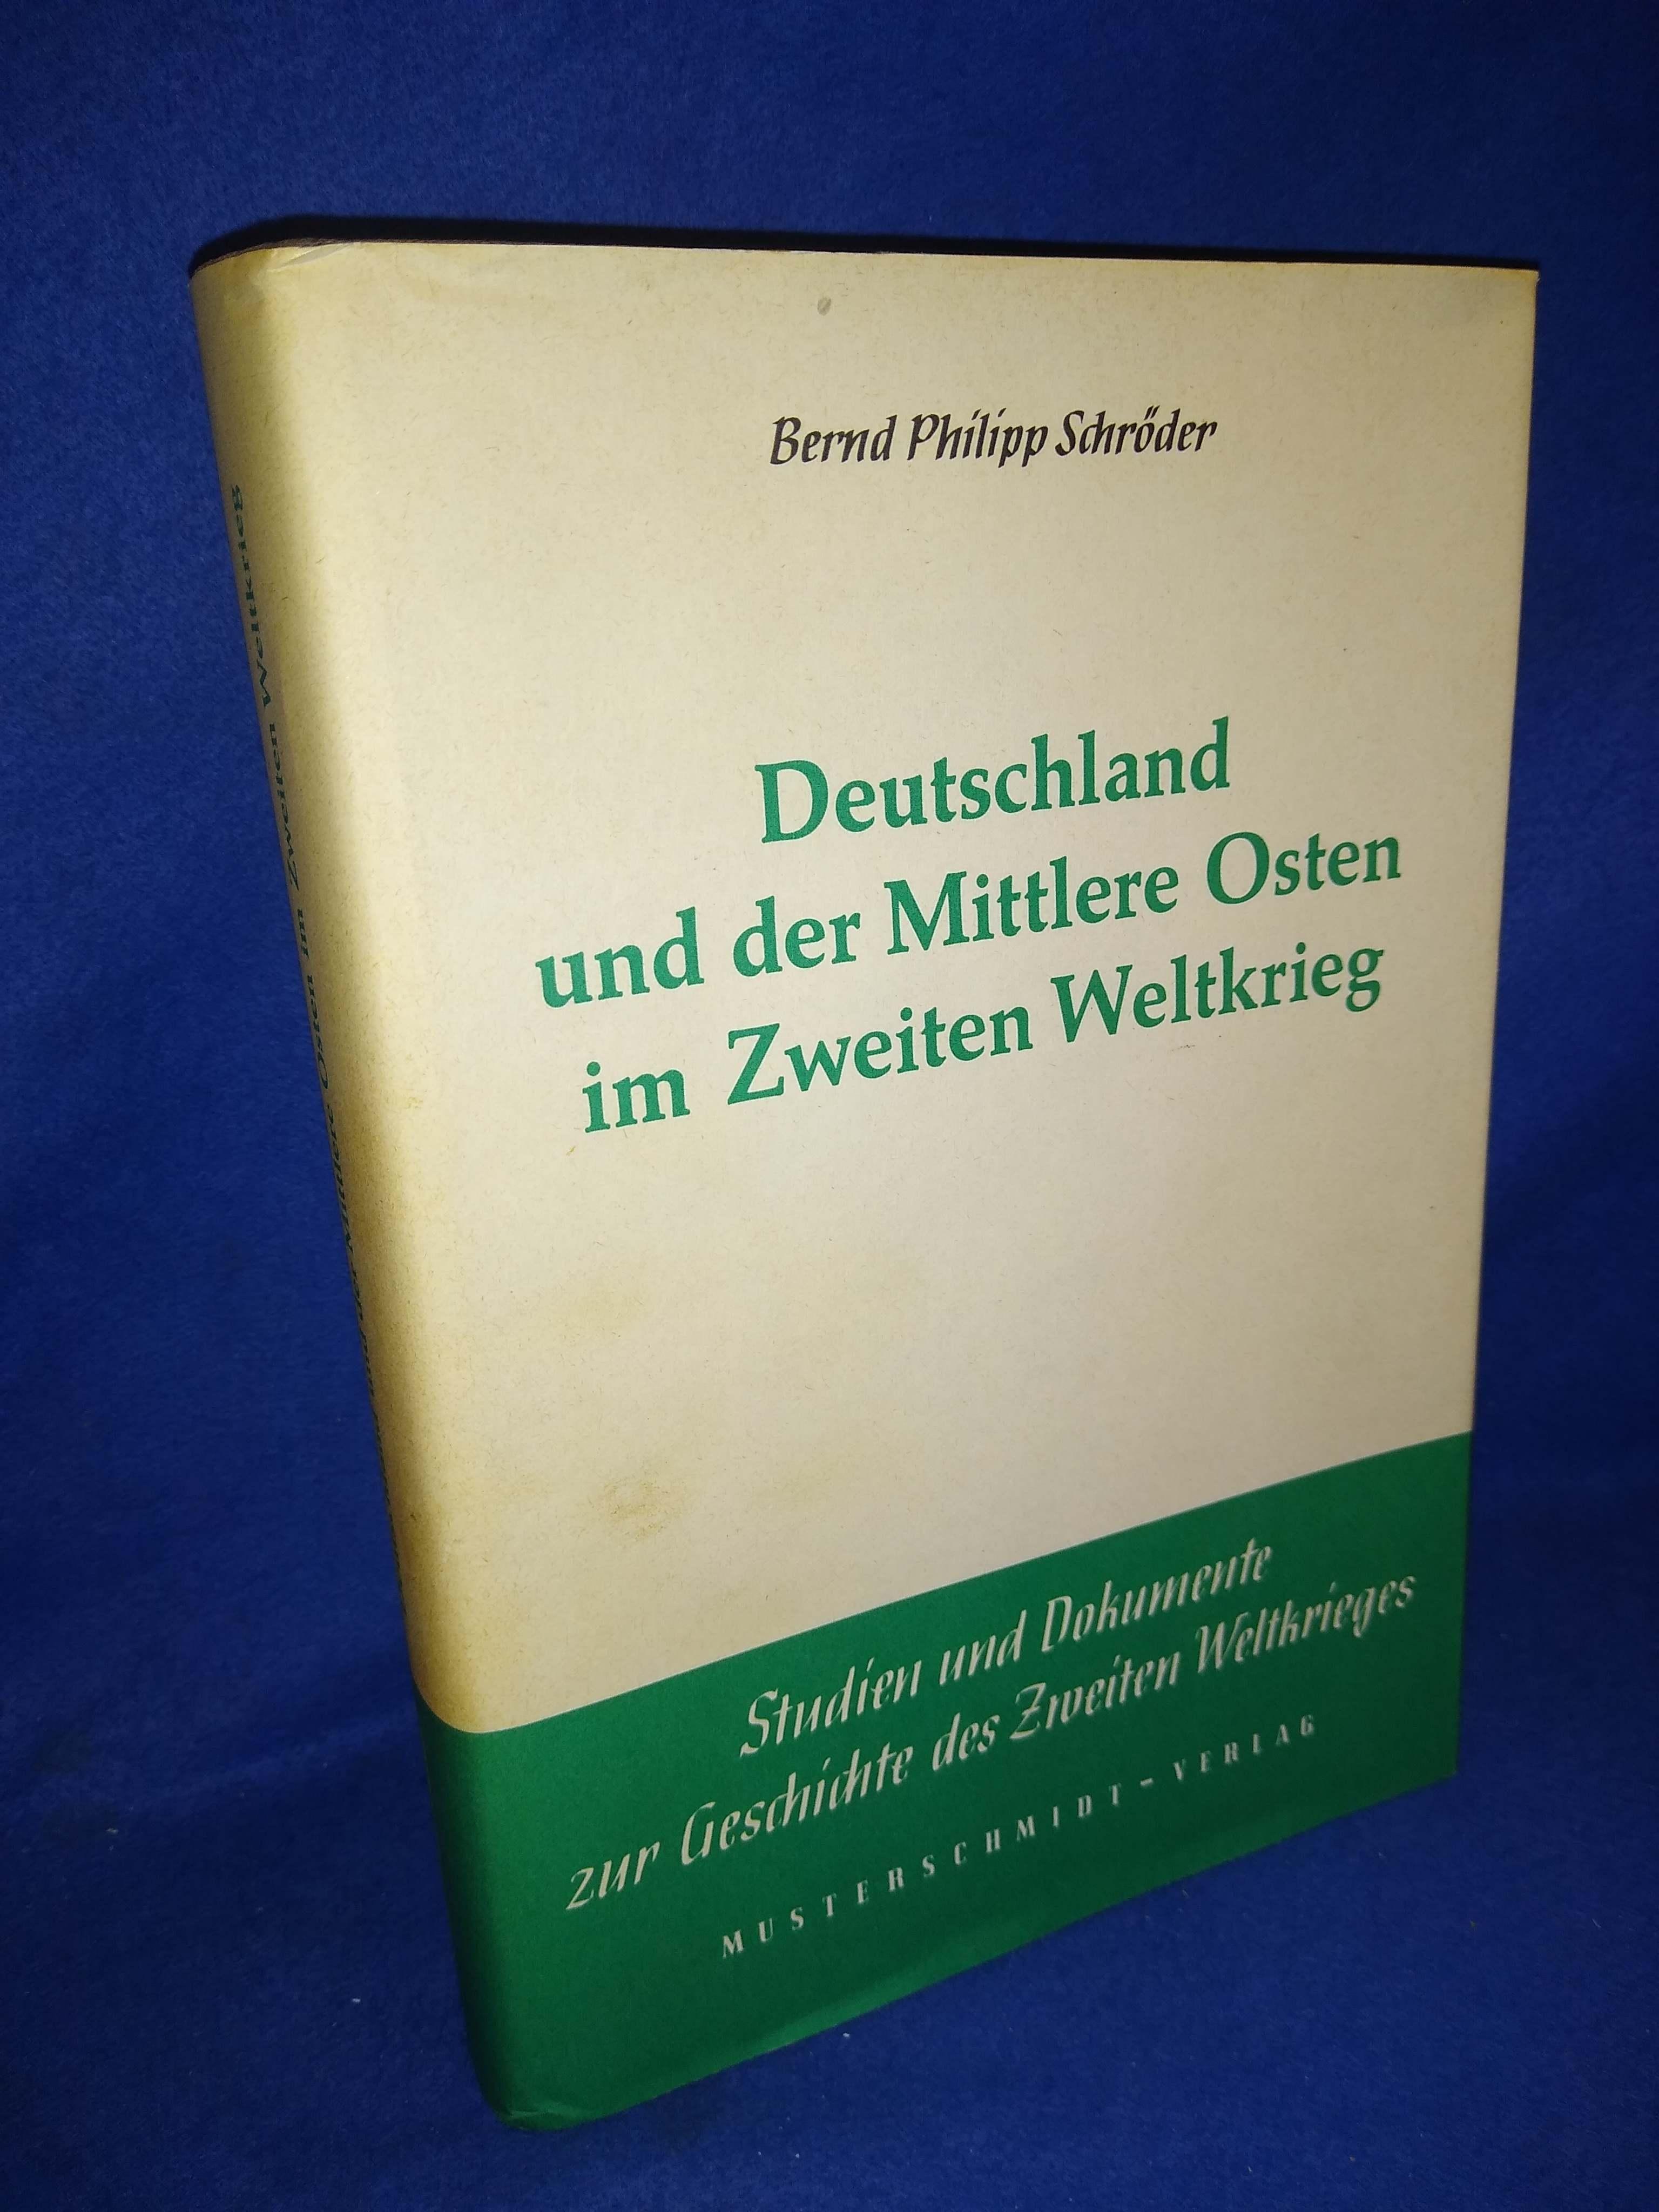 Deutschland und der Mittlere Osten im Zweiten Weltkrieg.